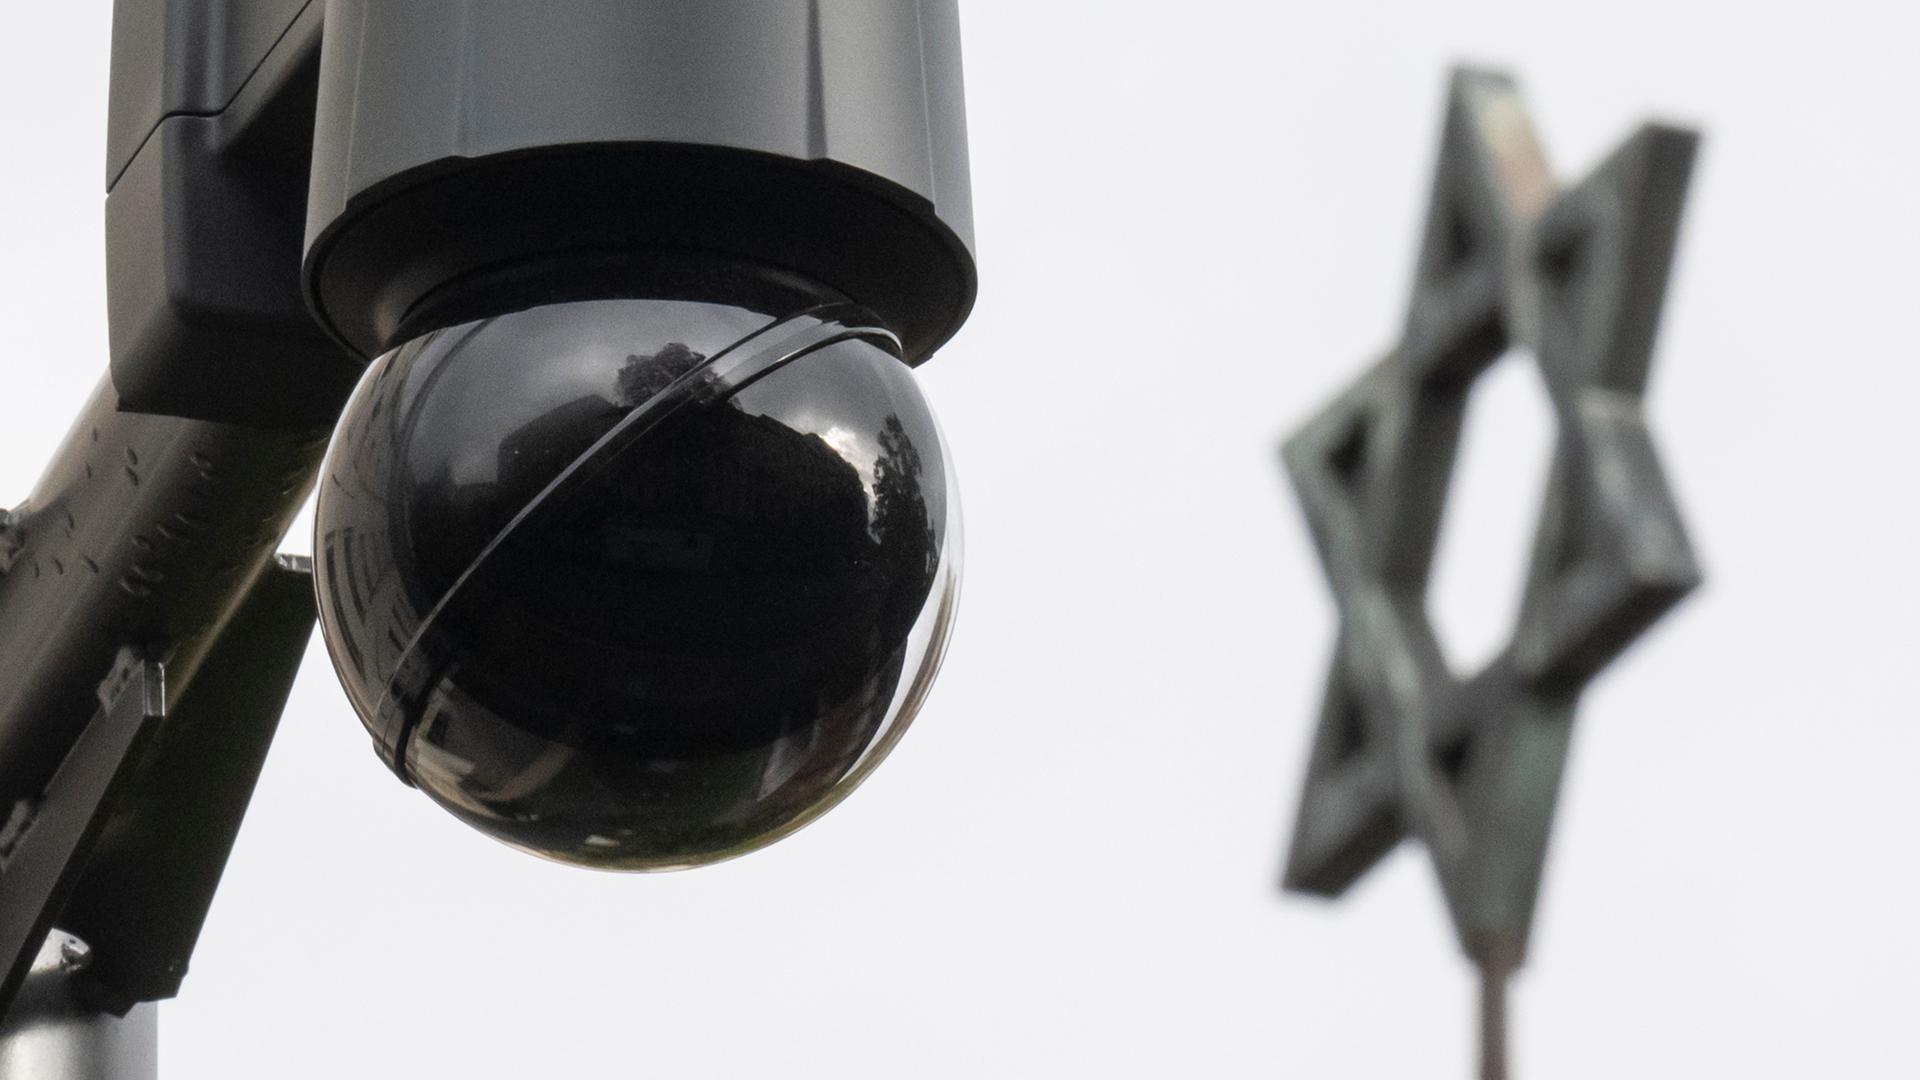 Eine Überwachungskamera neben dem Davidstern an der Synagoge in Halle/Saale